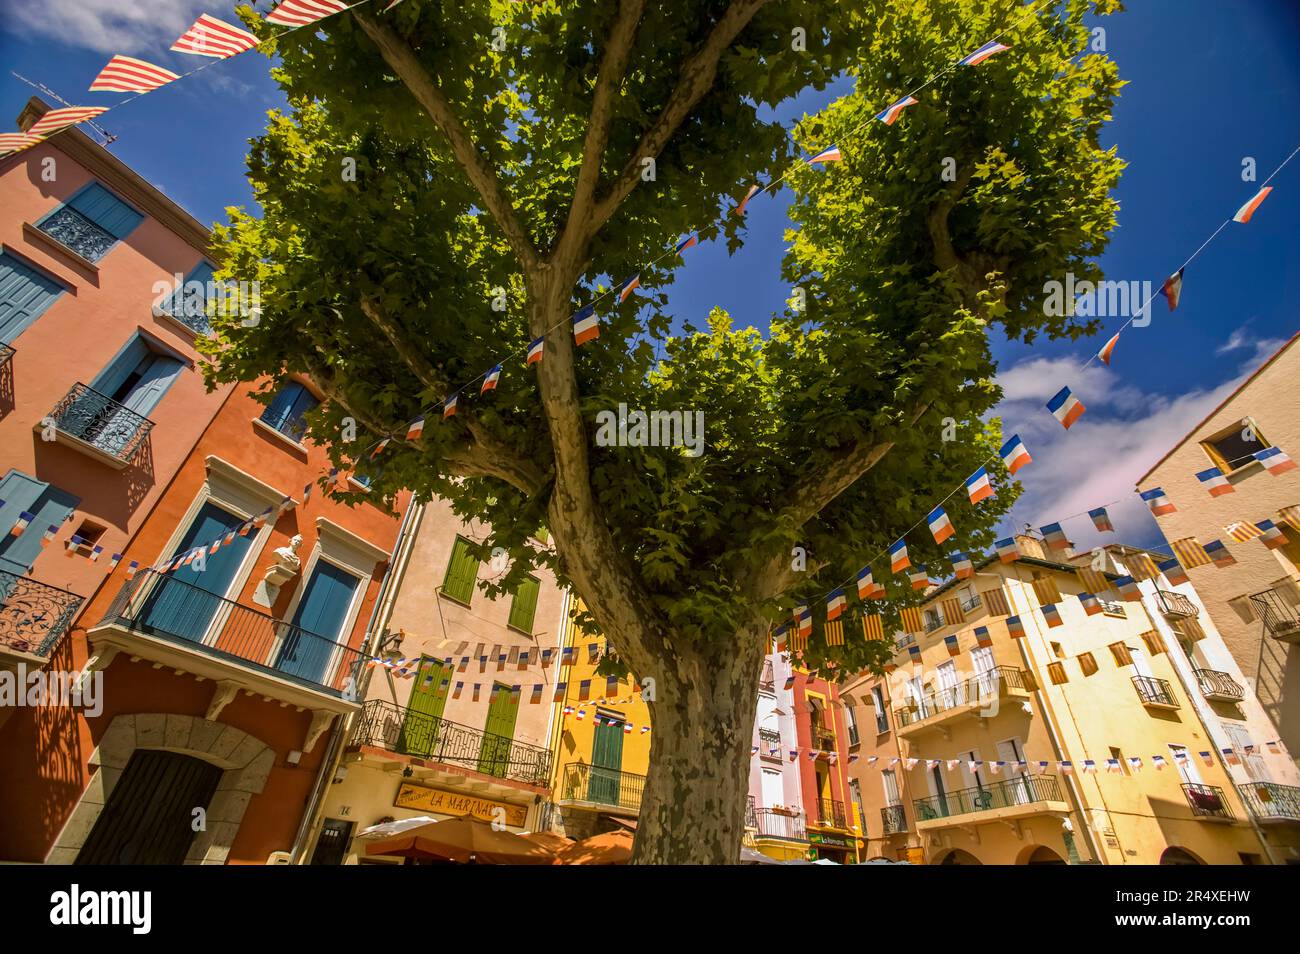 Una escena callejera en Collioure. Foto de stock